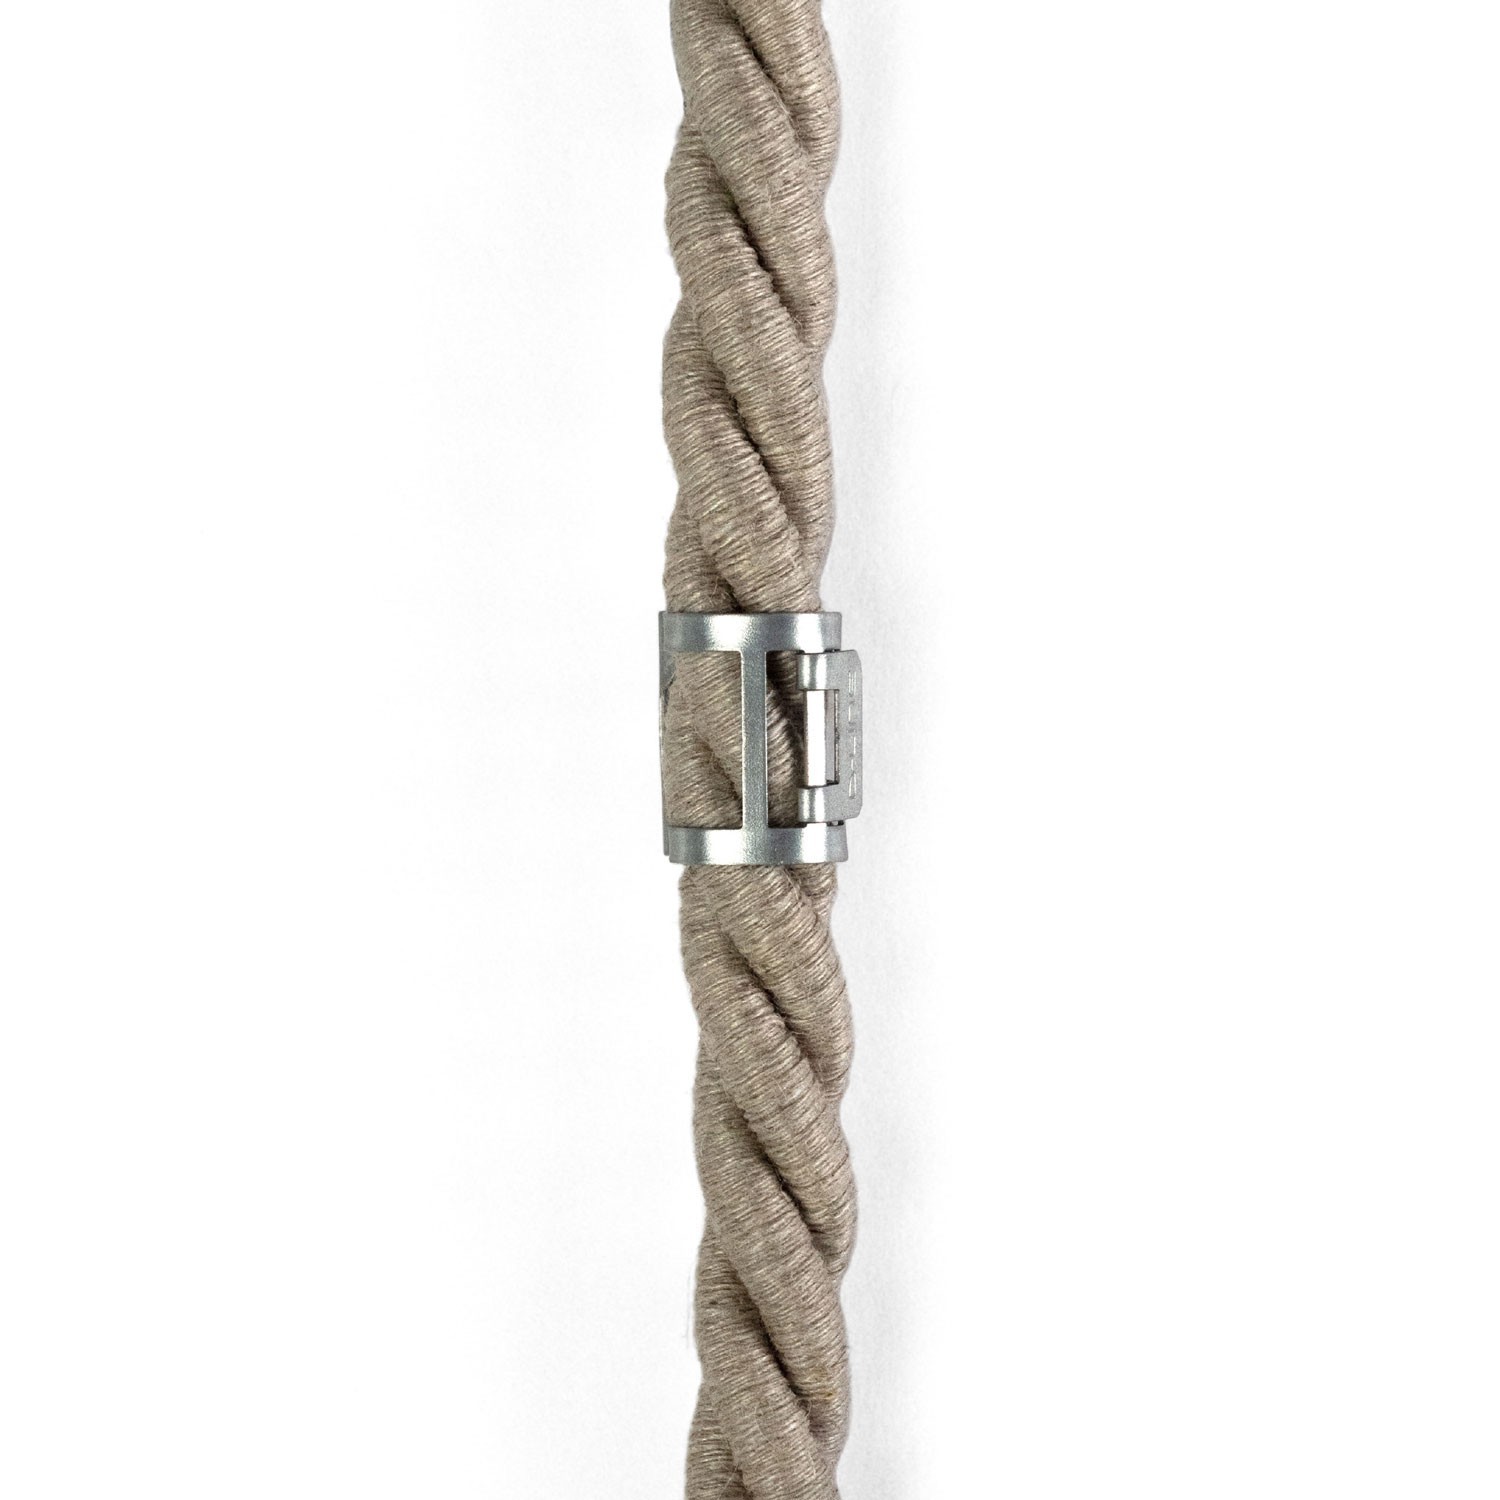 Metalna kopča za kabel za uže promjera 16 mm